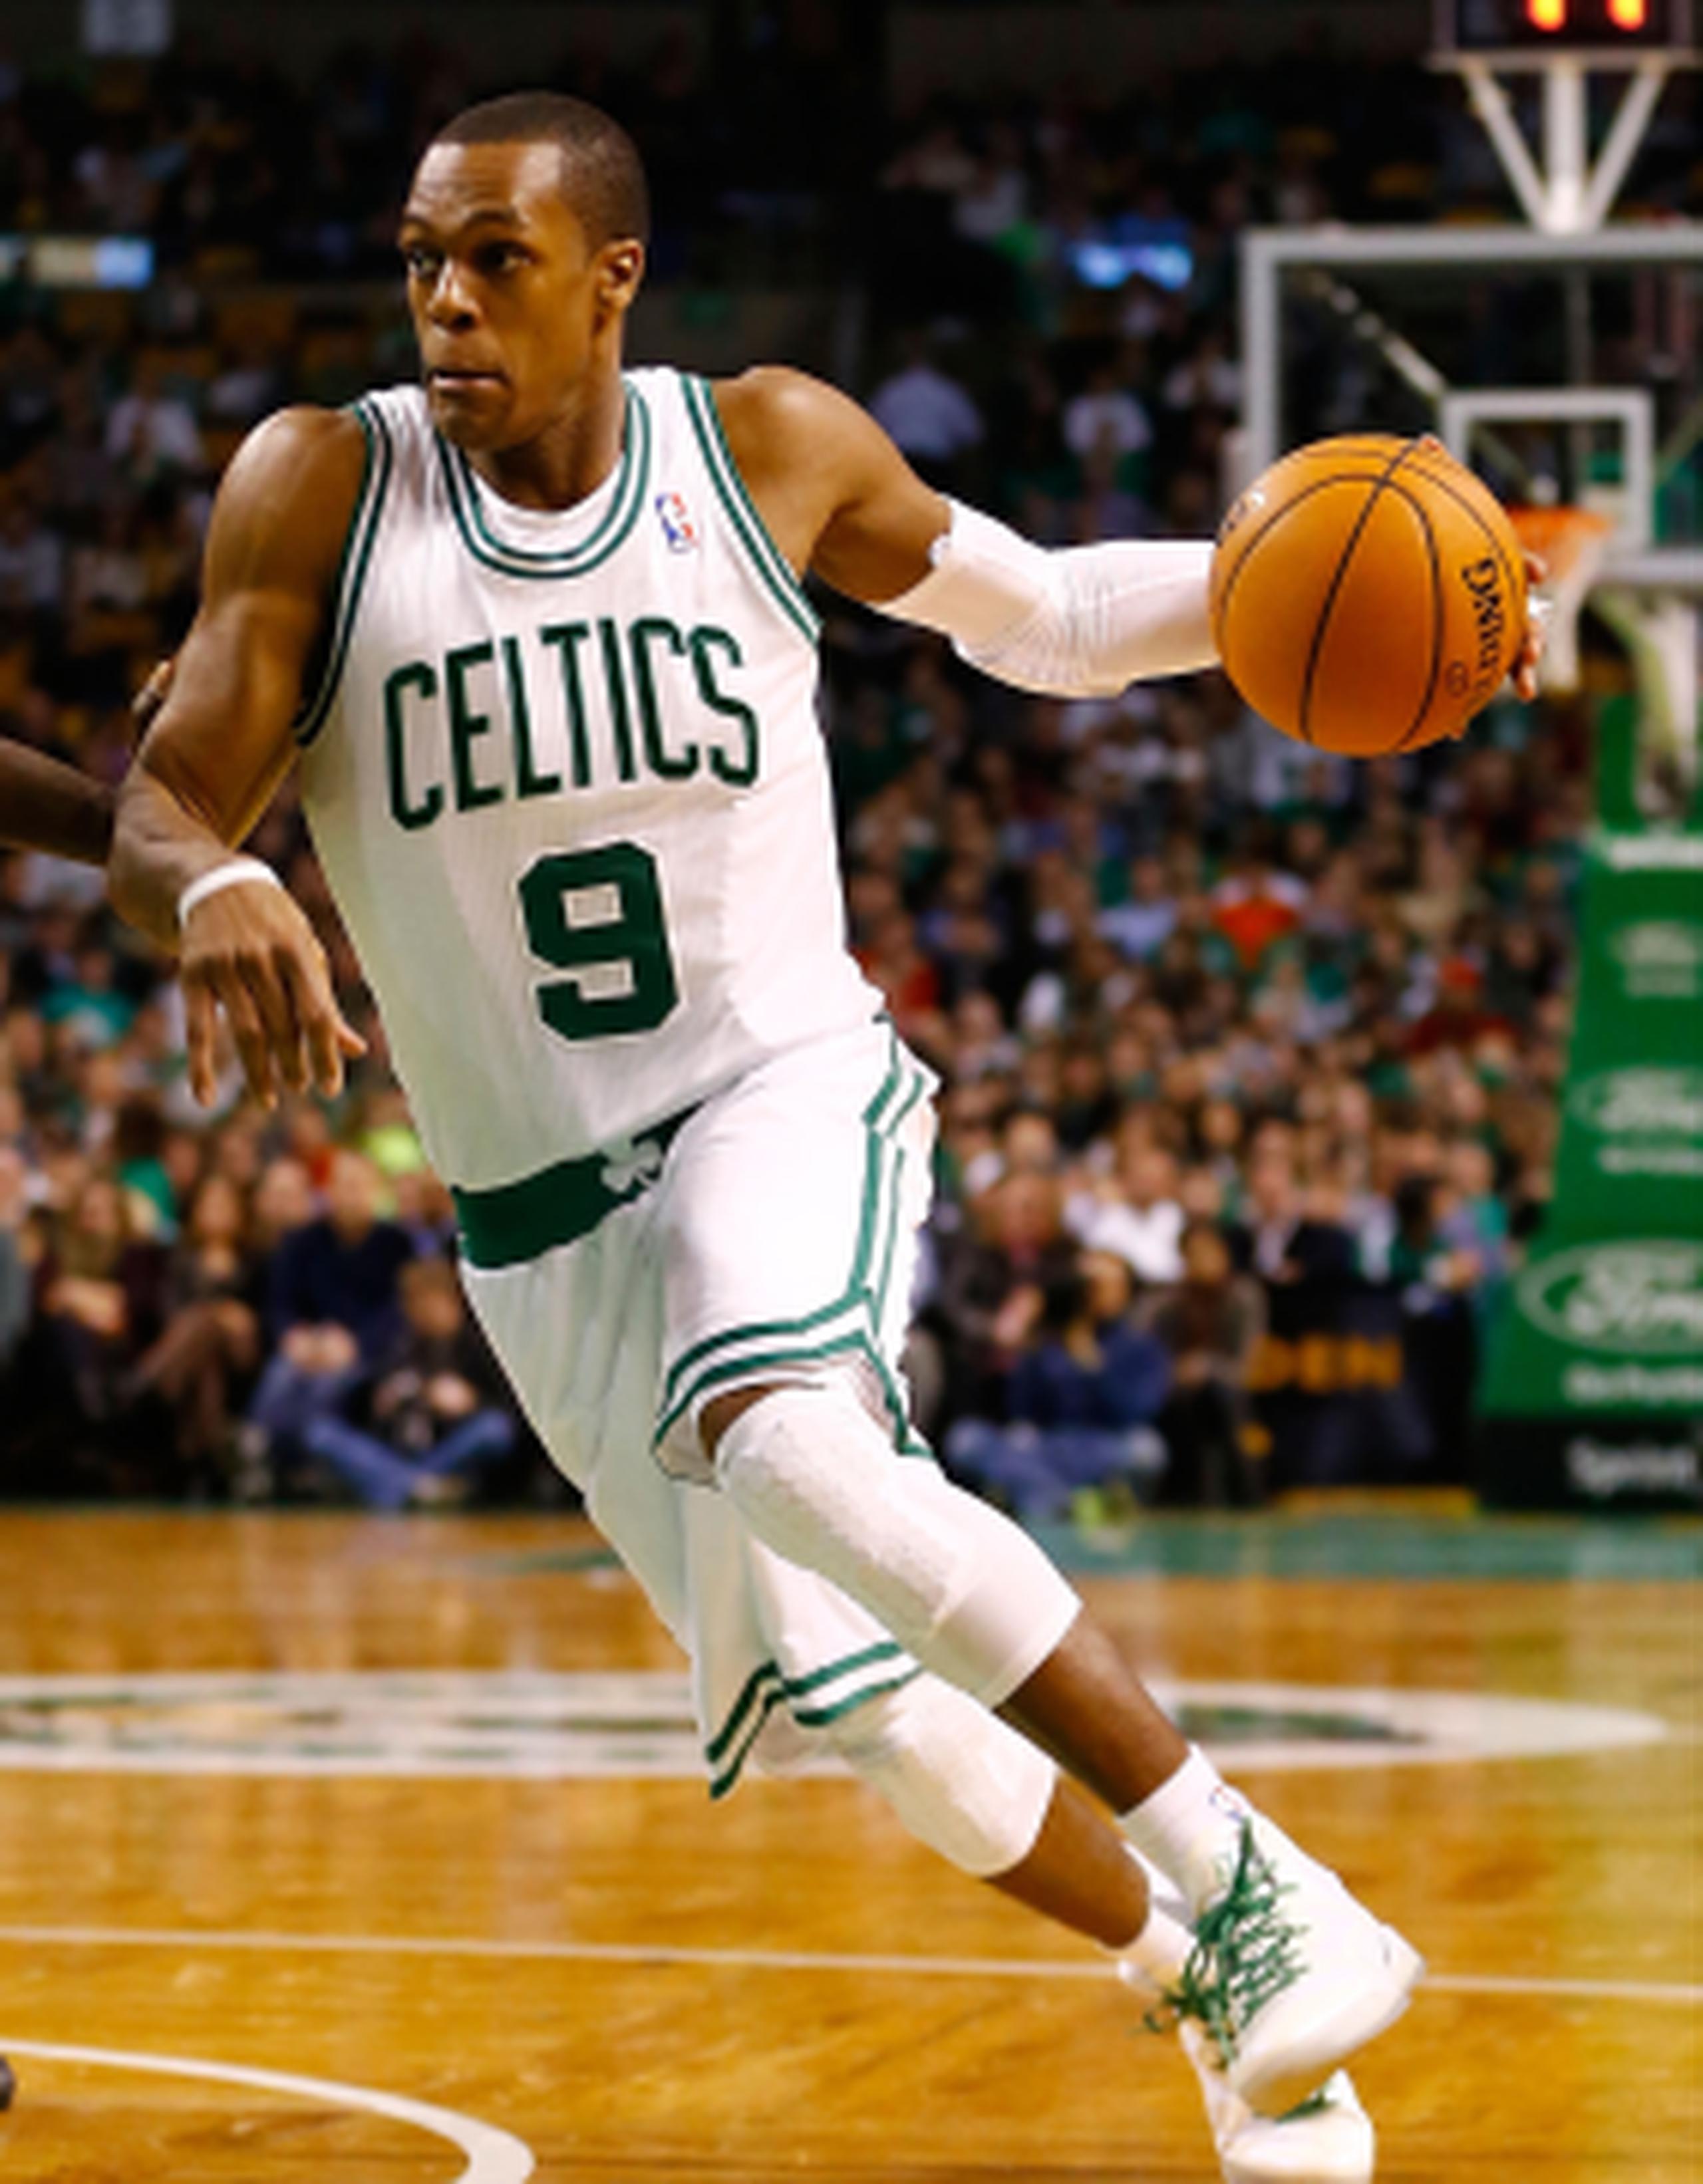 El último incidente protagonizado por Rondo se produjo a falta de 3:19 de juego en el el tercer período del partido que los Celtics ganaron 89-81 ante los Hawks de Atlanta. (AFP)